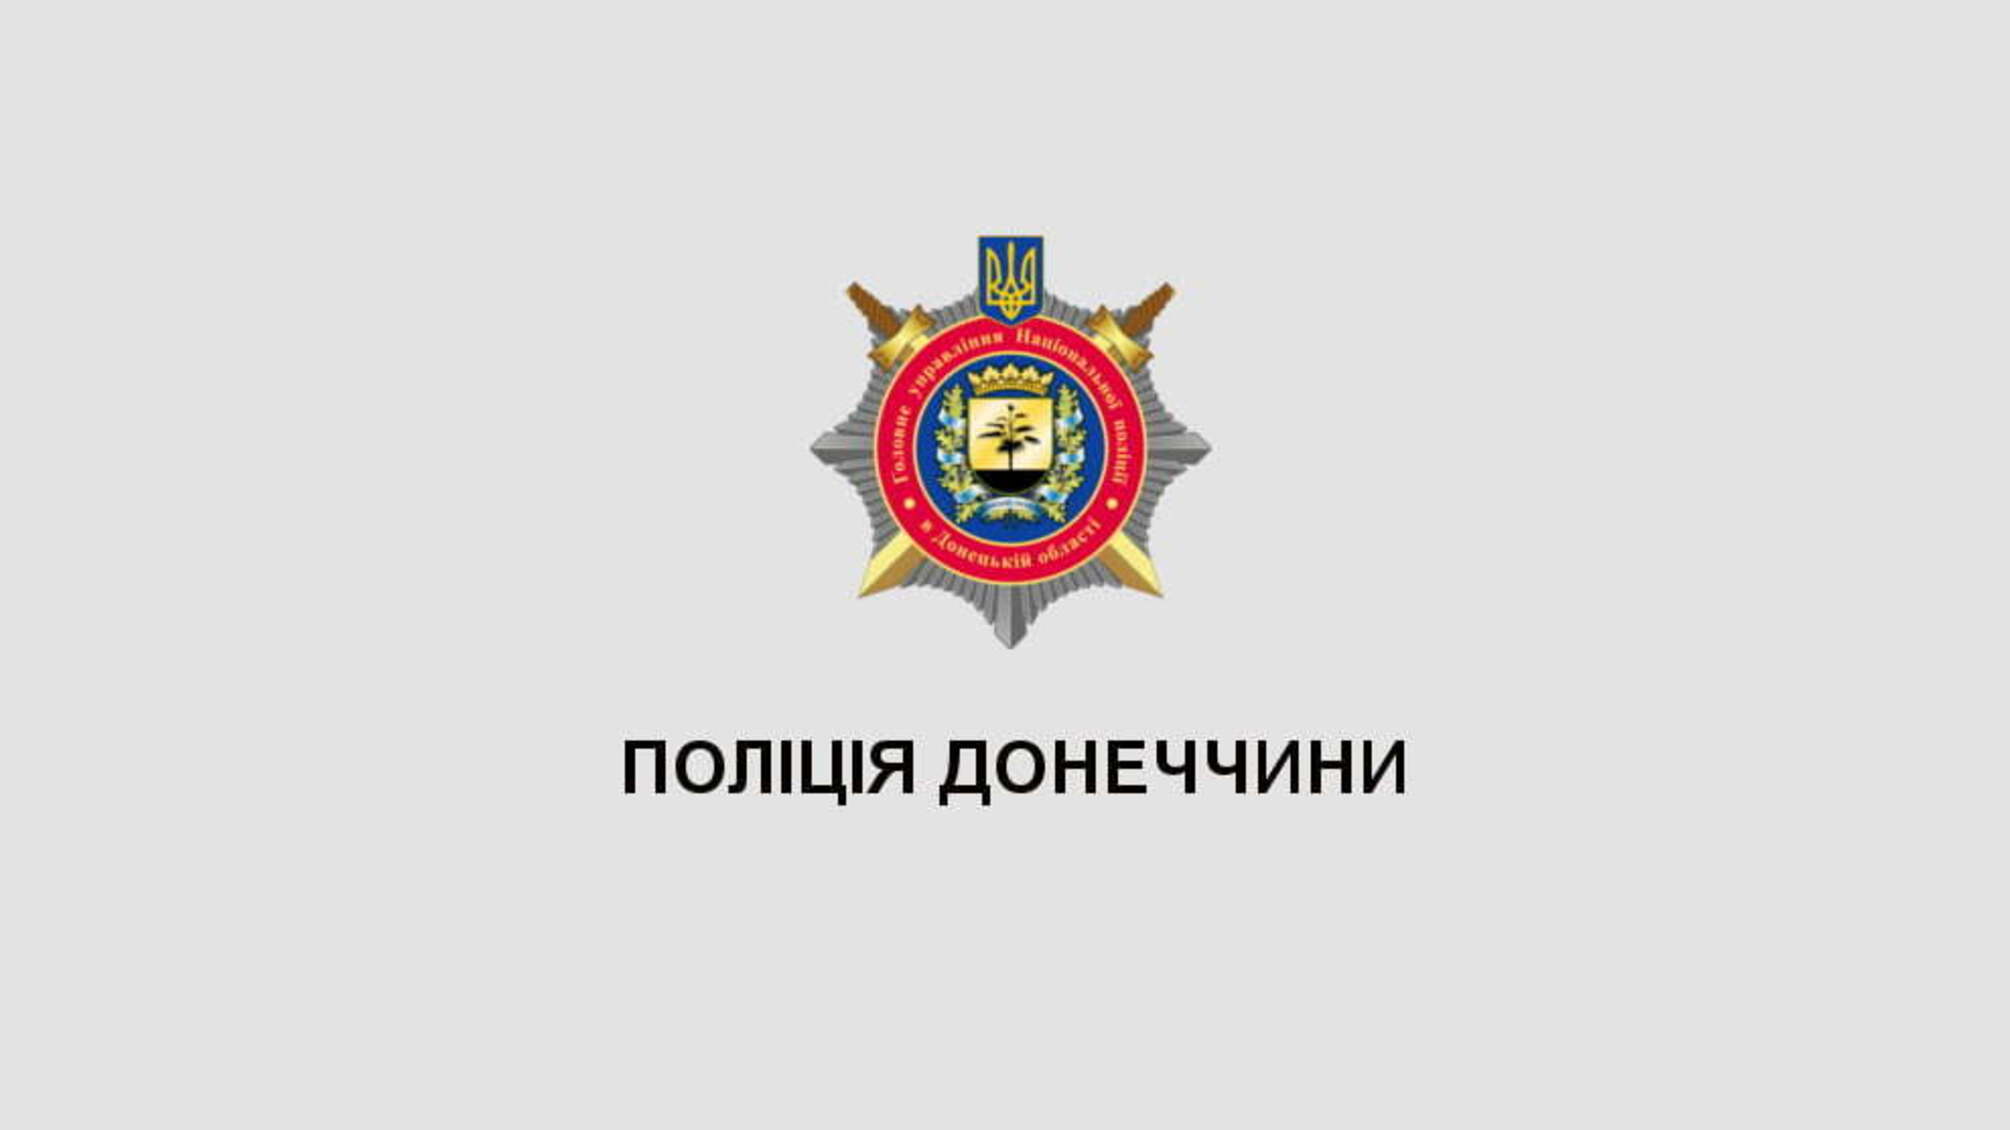 Поліція діалогу Донеччини обмінялася досвідом з колегами з Хмельниччини щодо попередження конфліктних ситуацій під час масових заходів